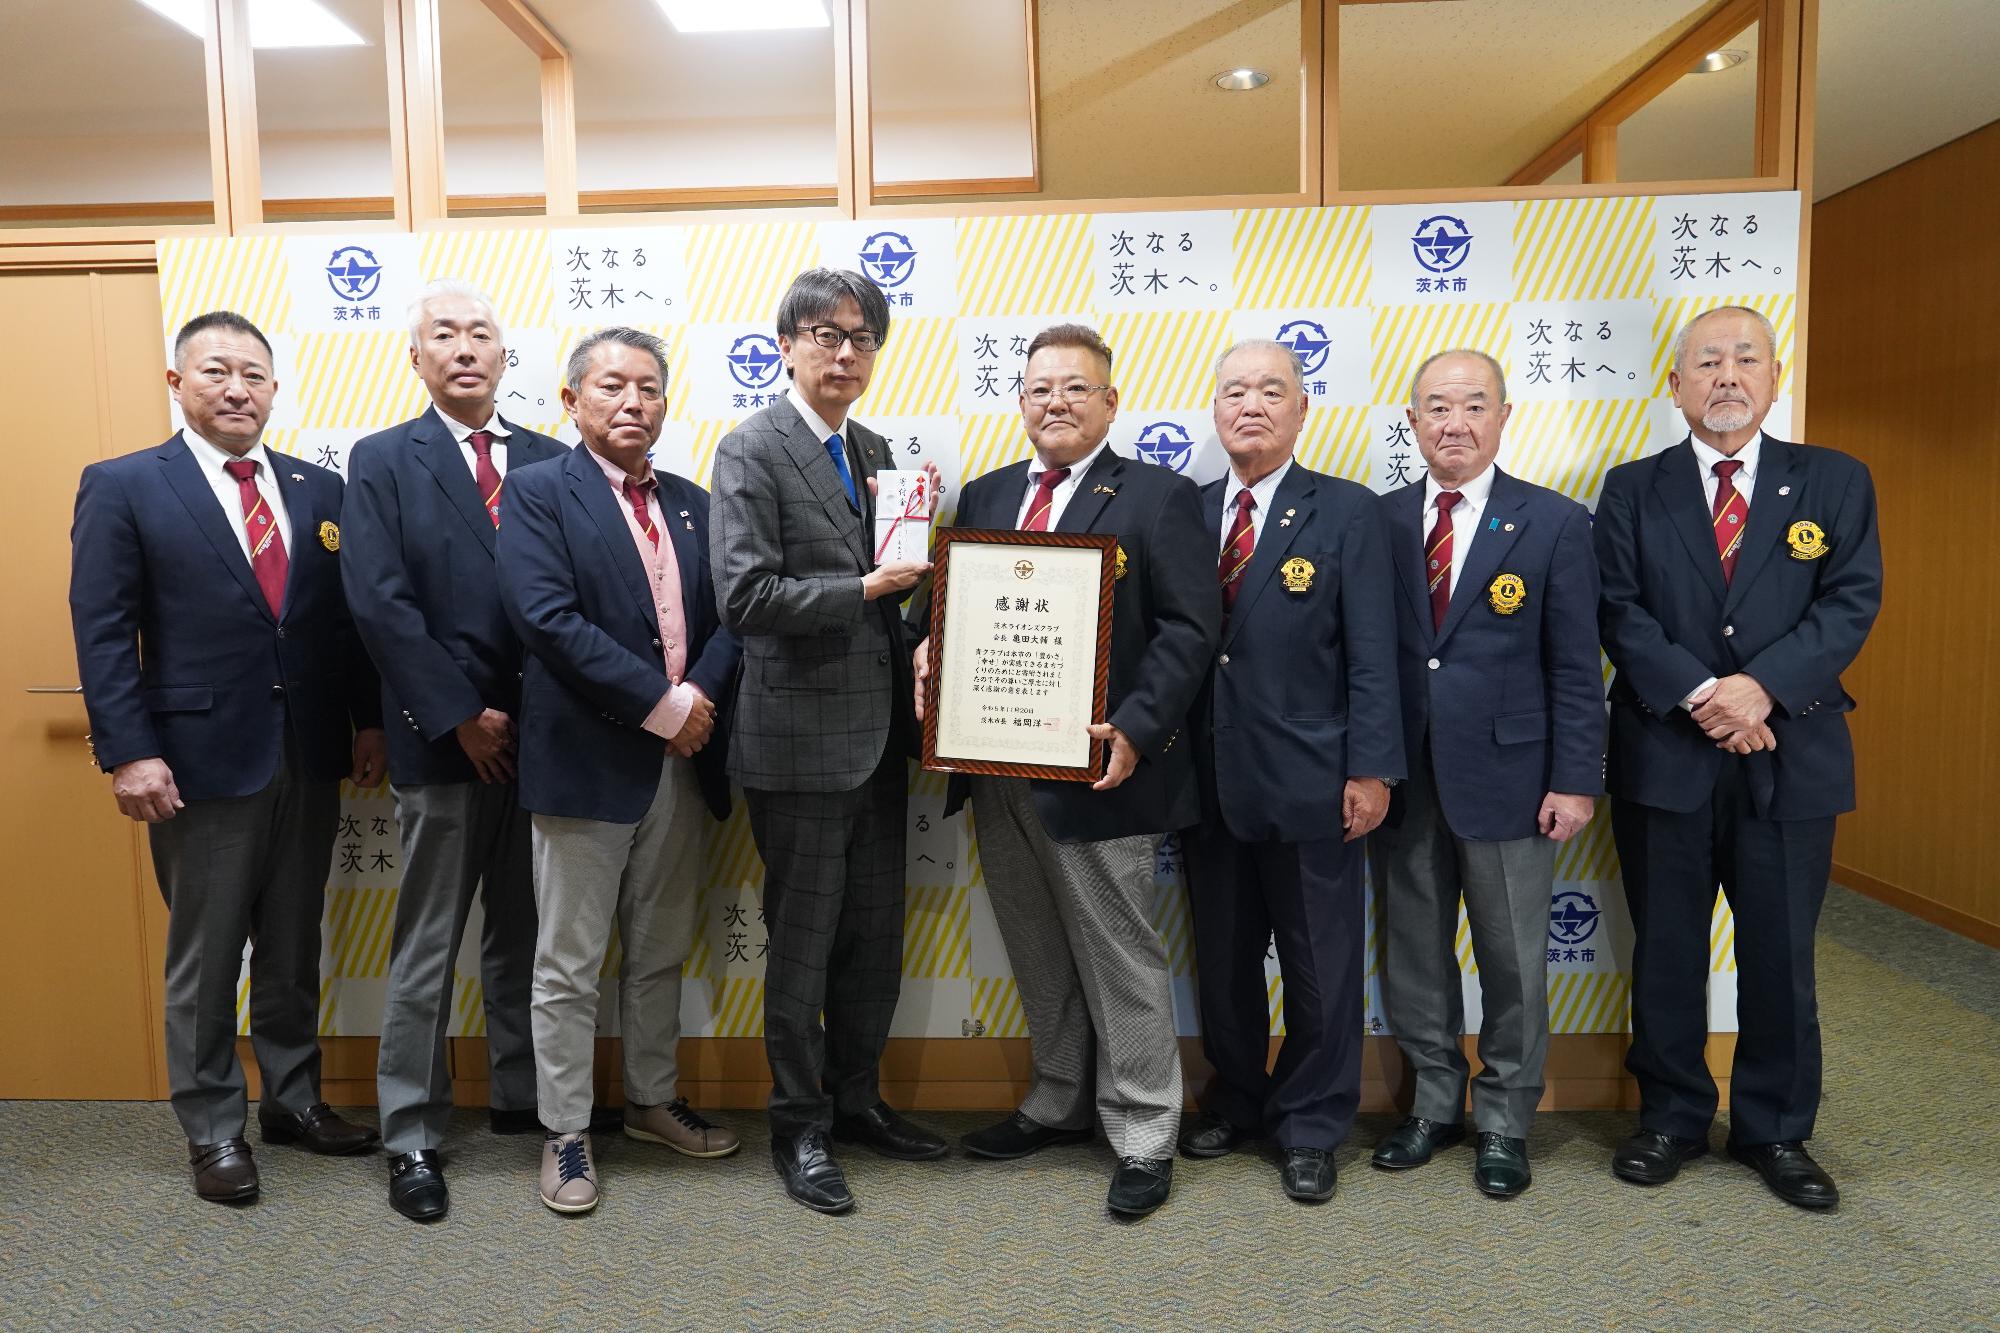 茨木ライオンズクラブの皆さんと市長の写真